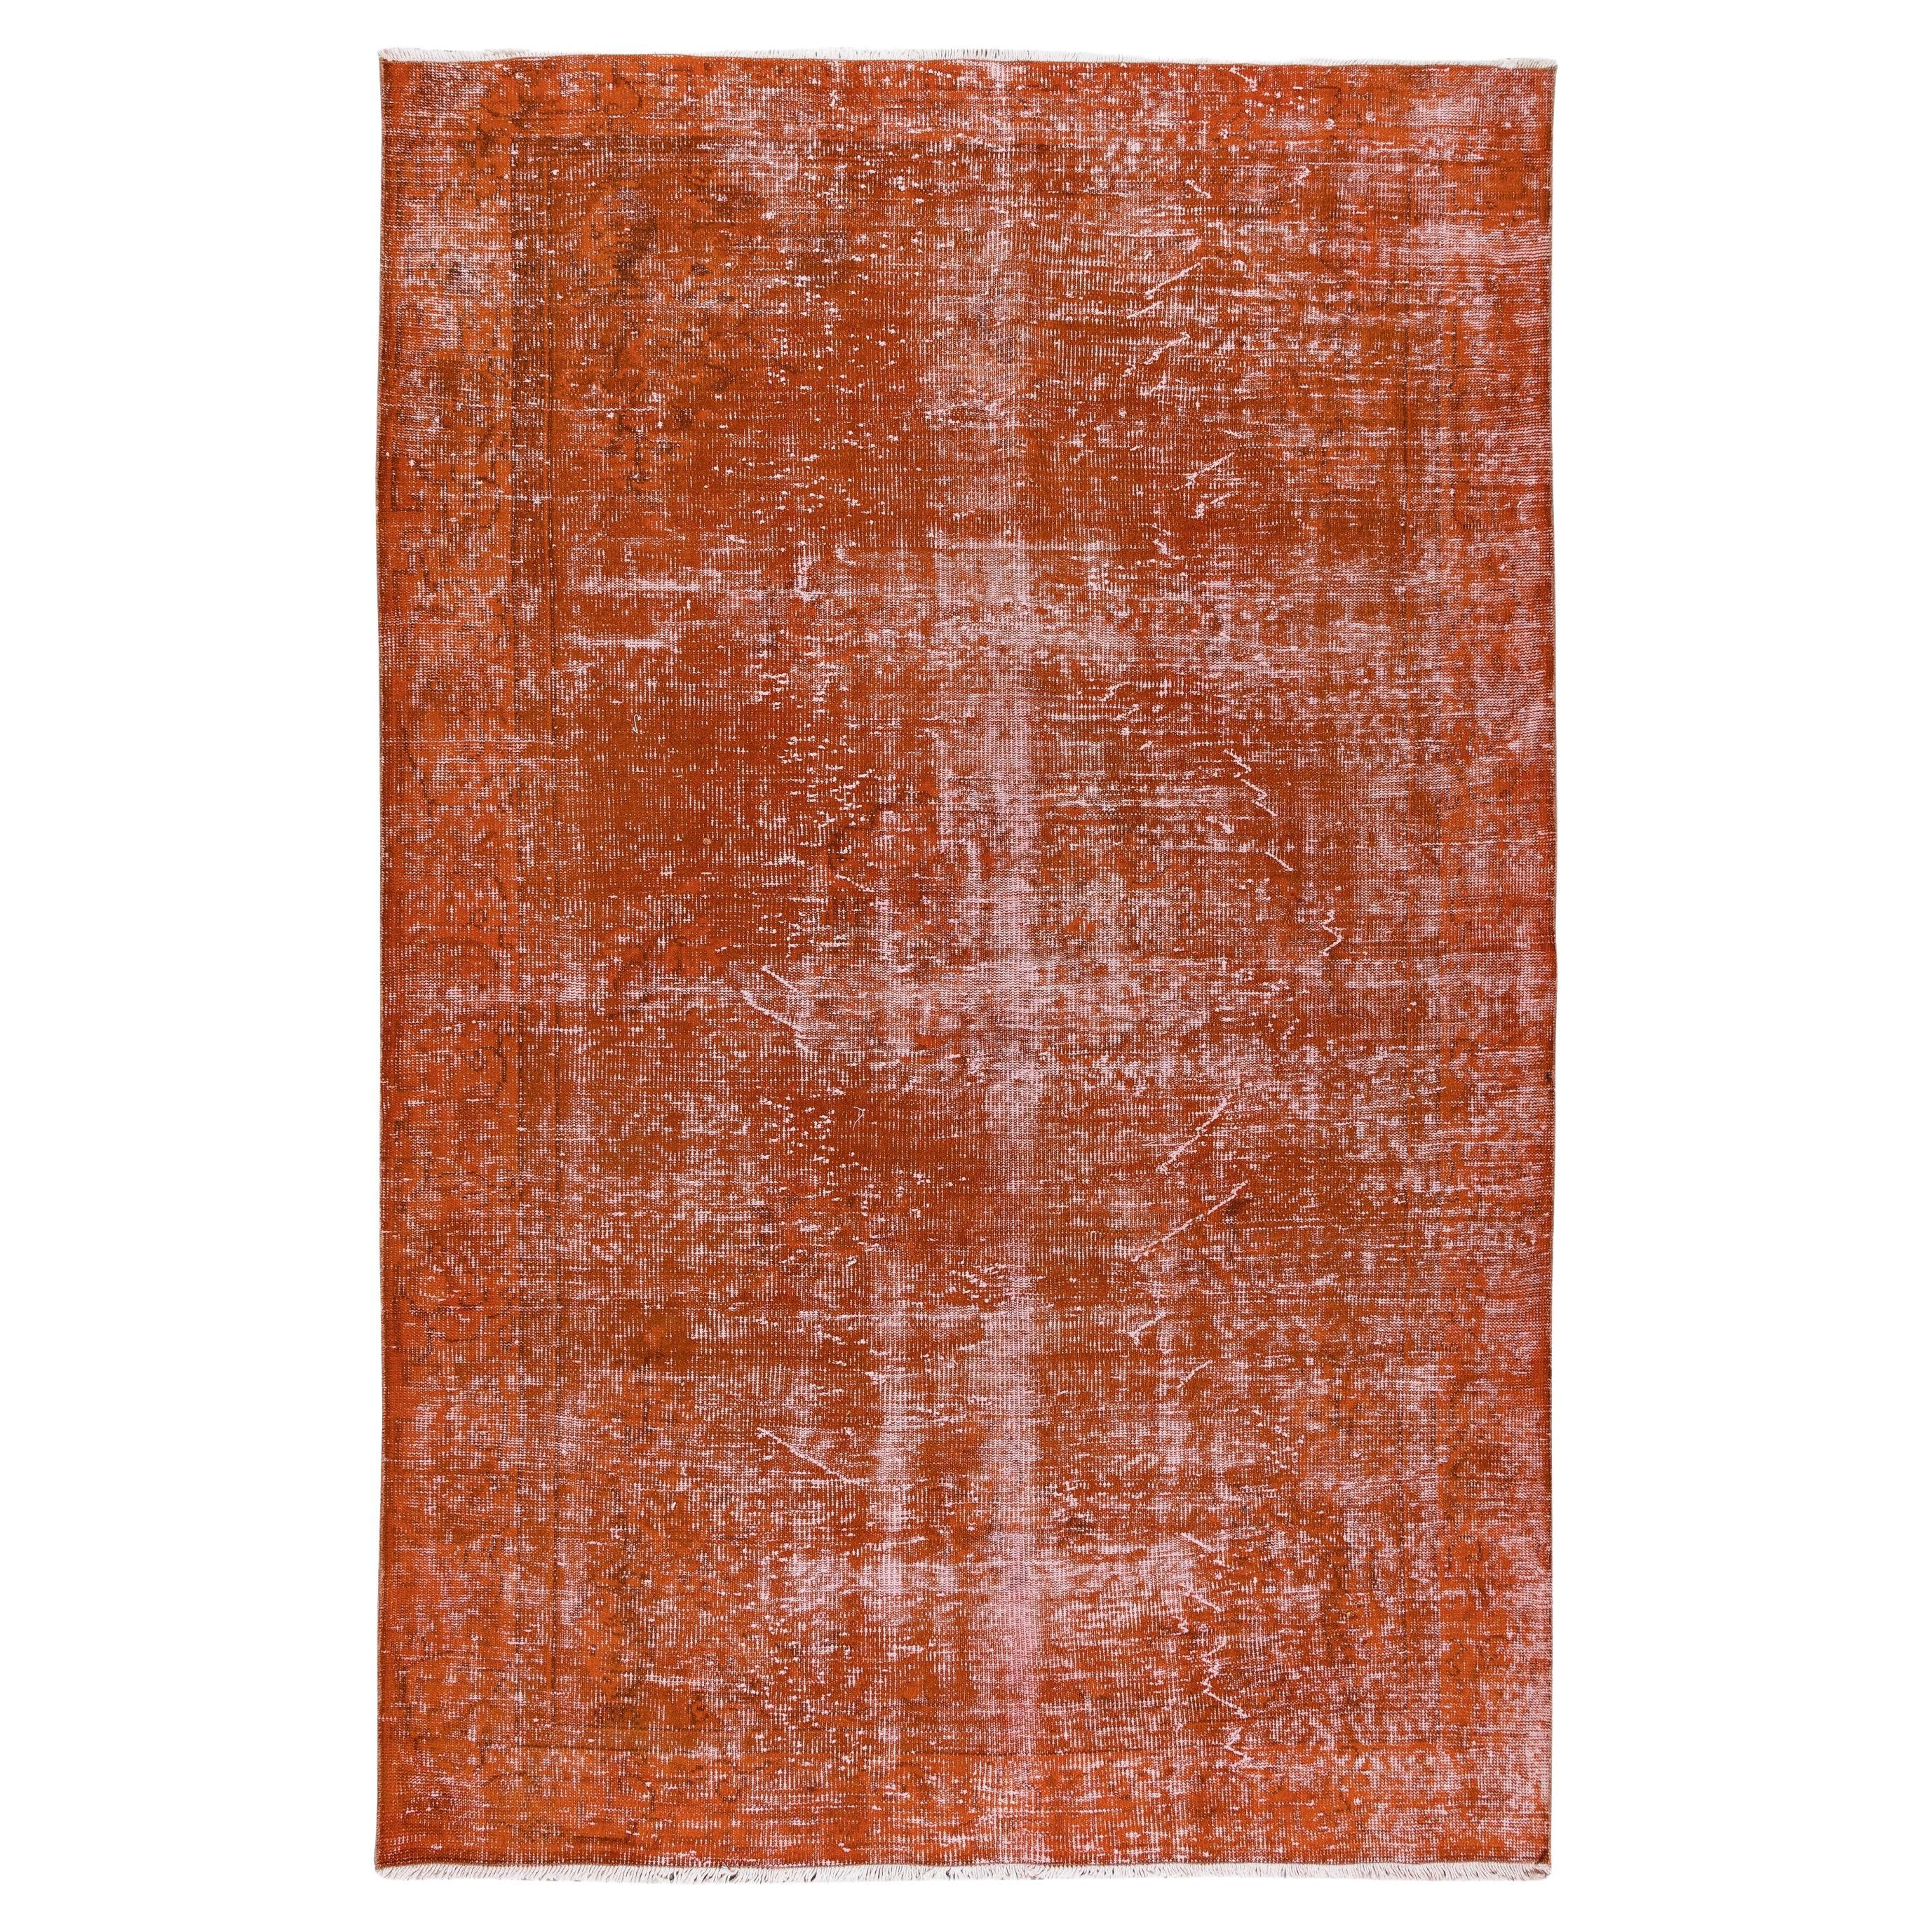 6.6x10 Ft Handgefertigter türkischer Teppich in Orange, neu gefärbt, für moderne Inneneinrichtung